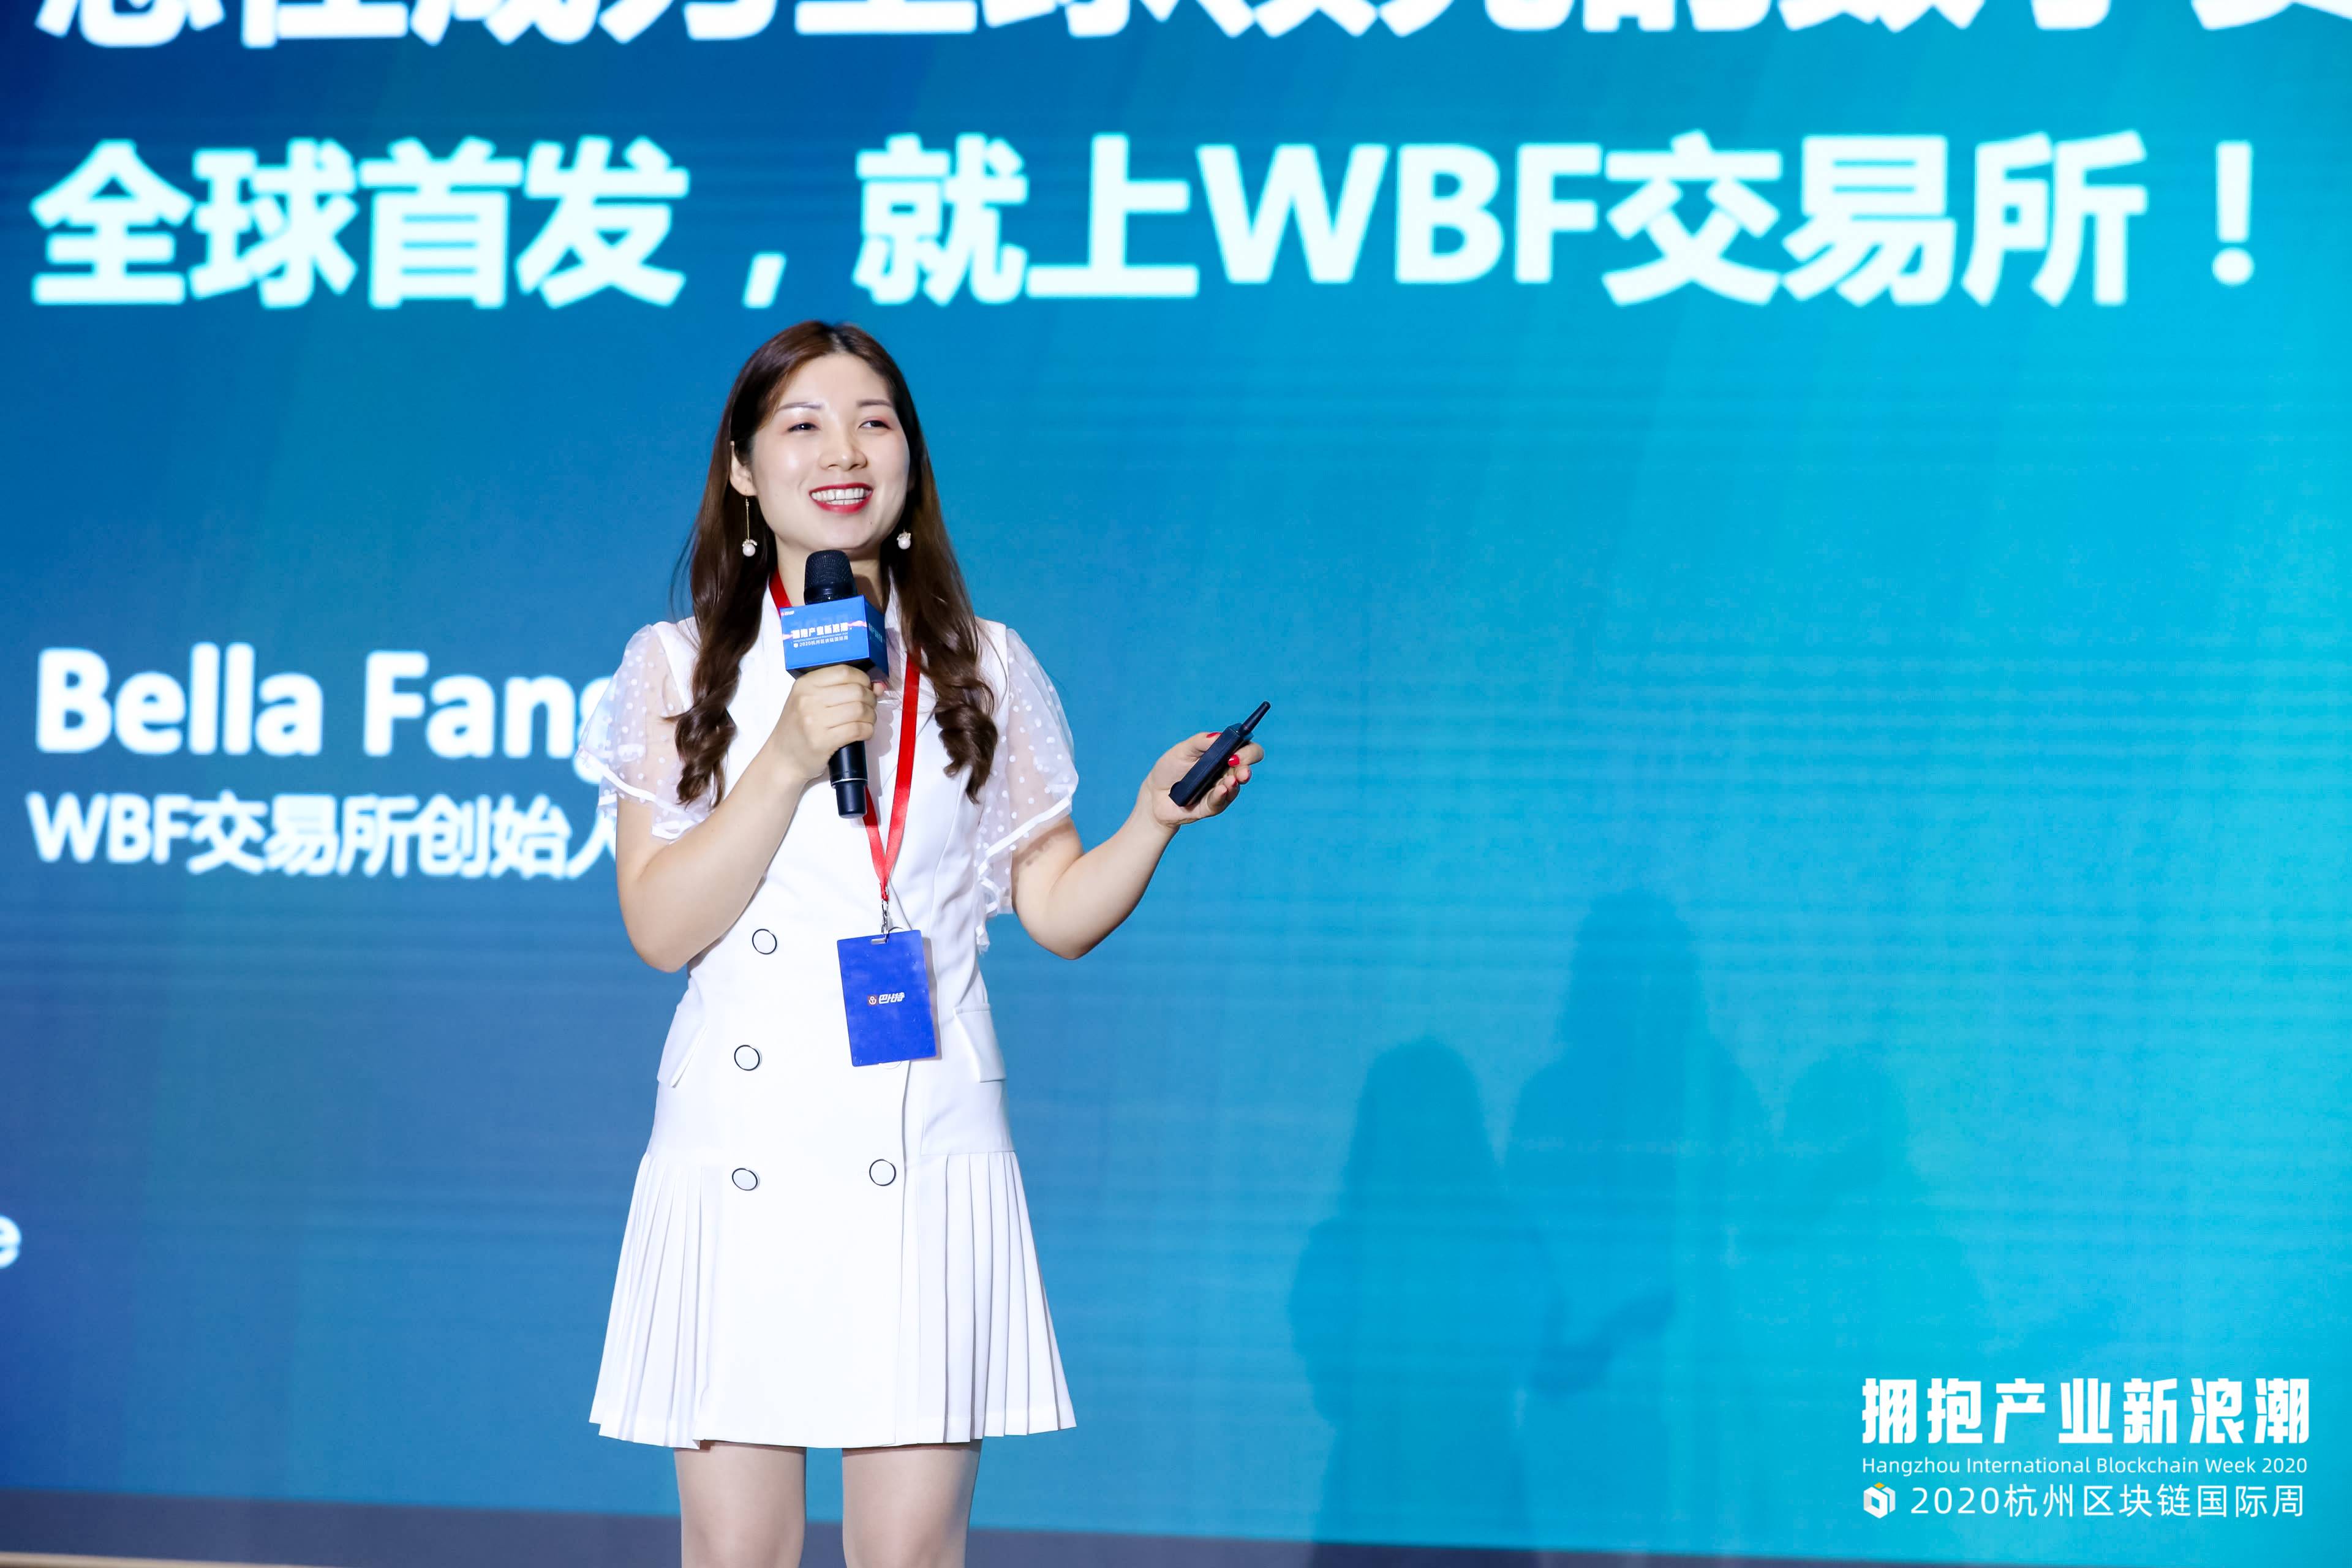 杭州区块链国际周 | WBF交易所Bellasdfs Fasdfsng：新